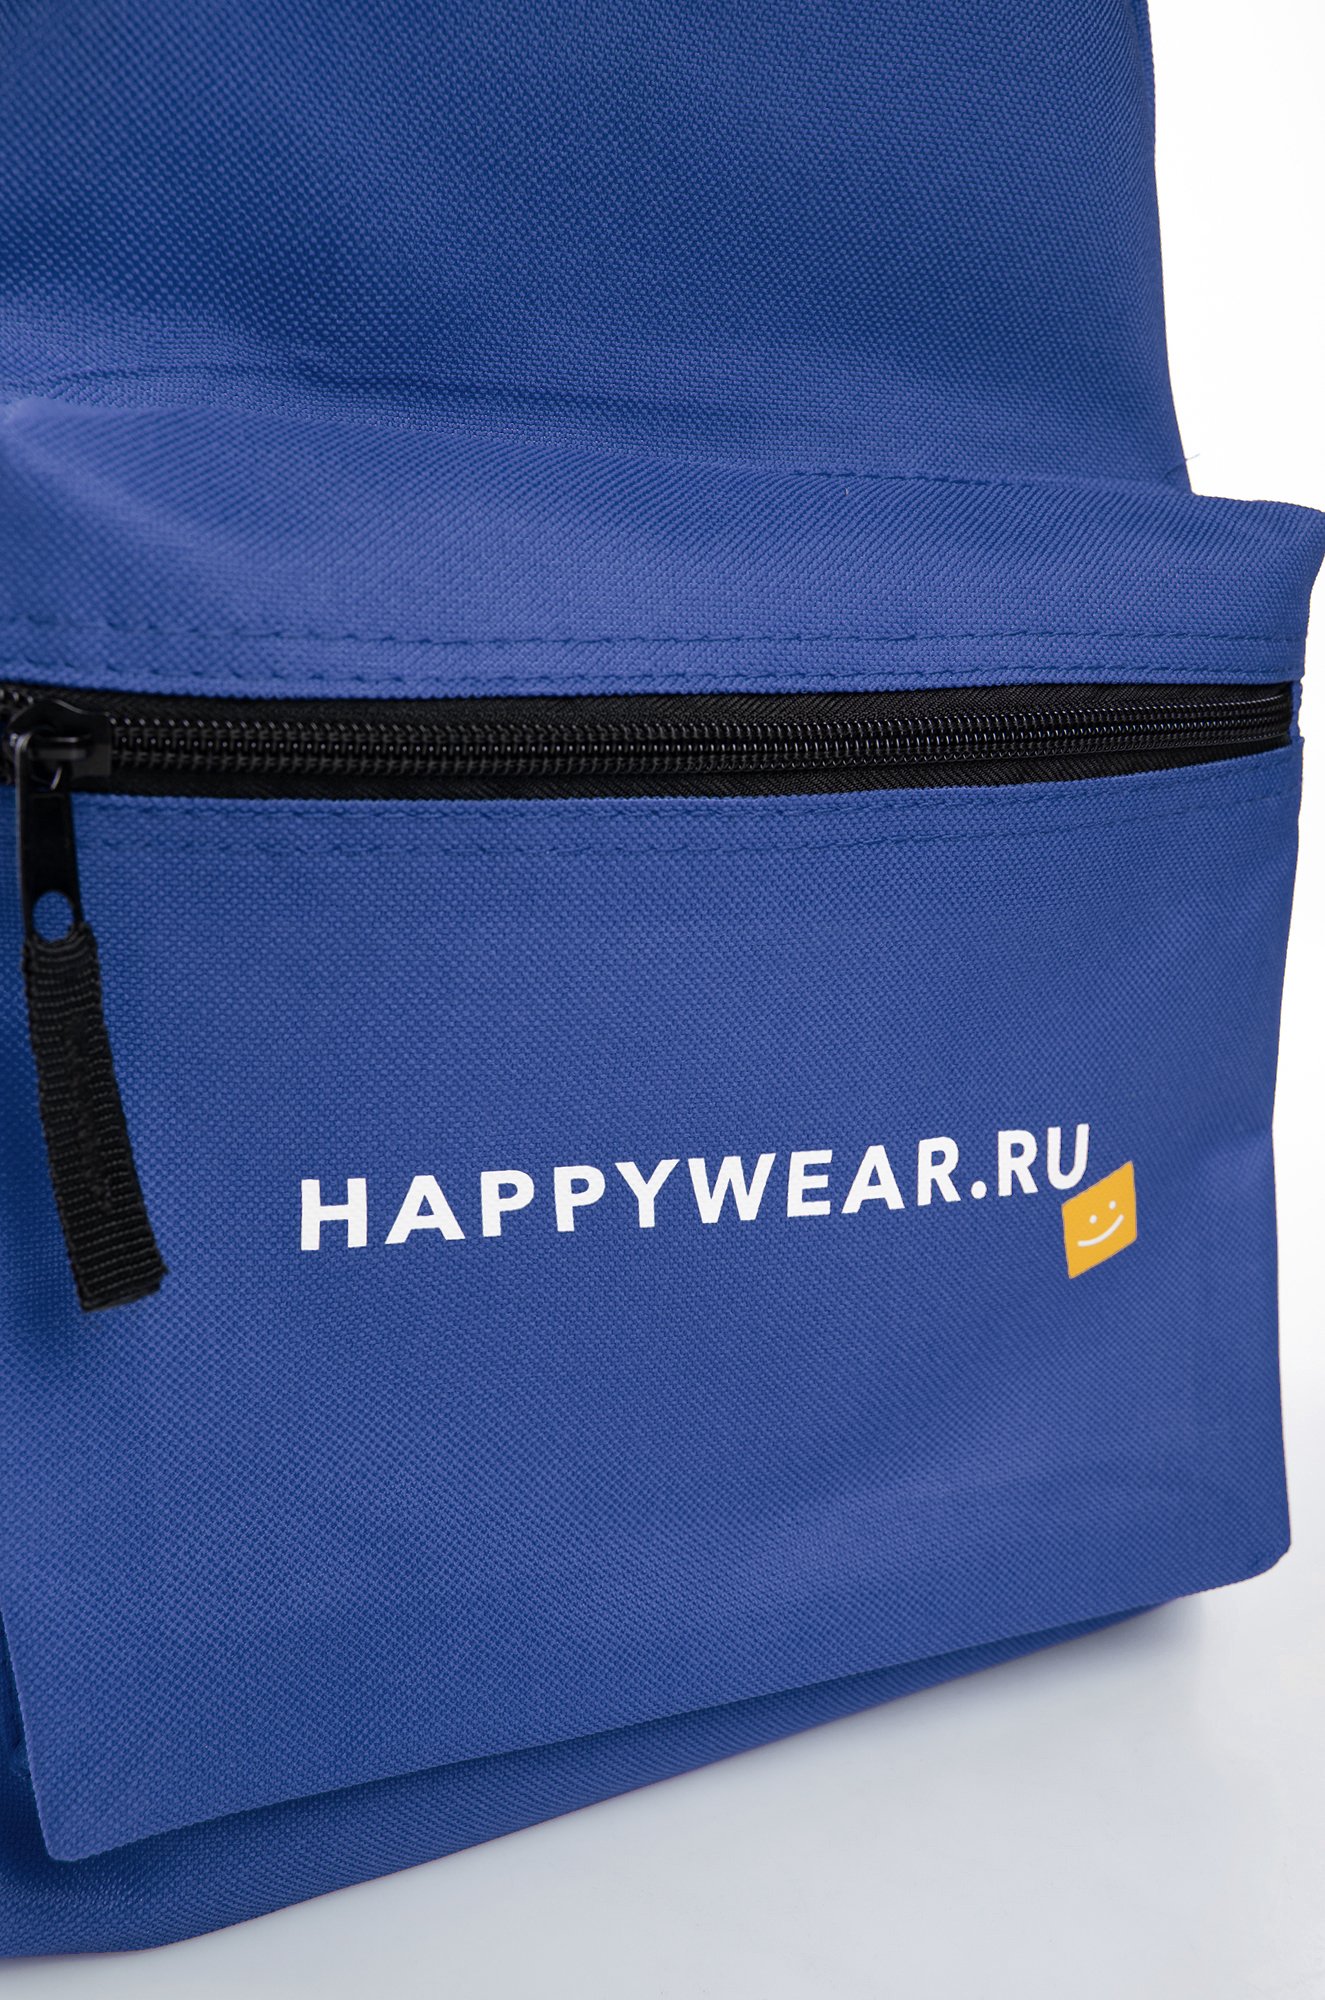 Рюкзак Happywear